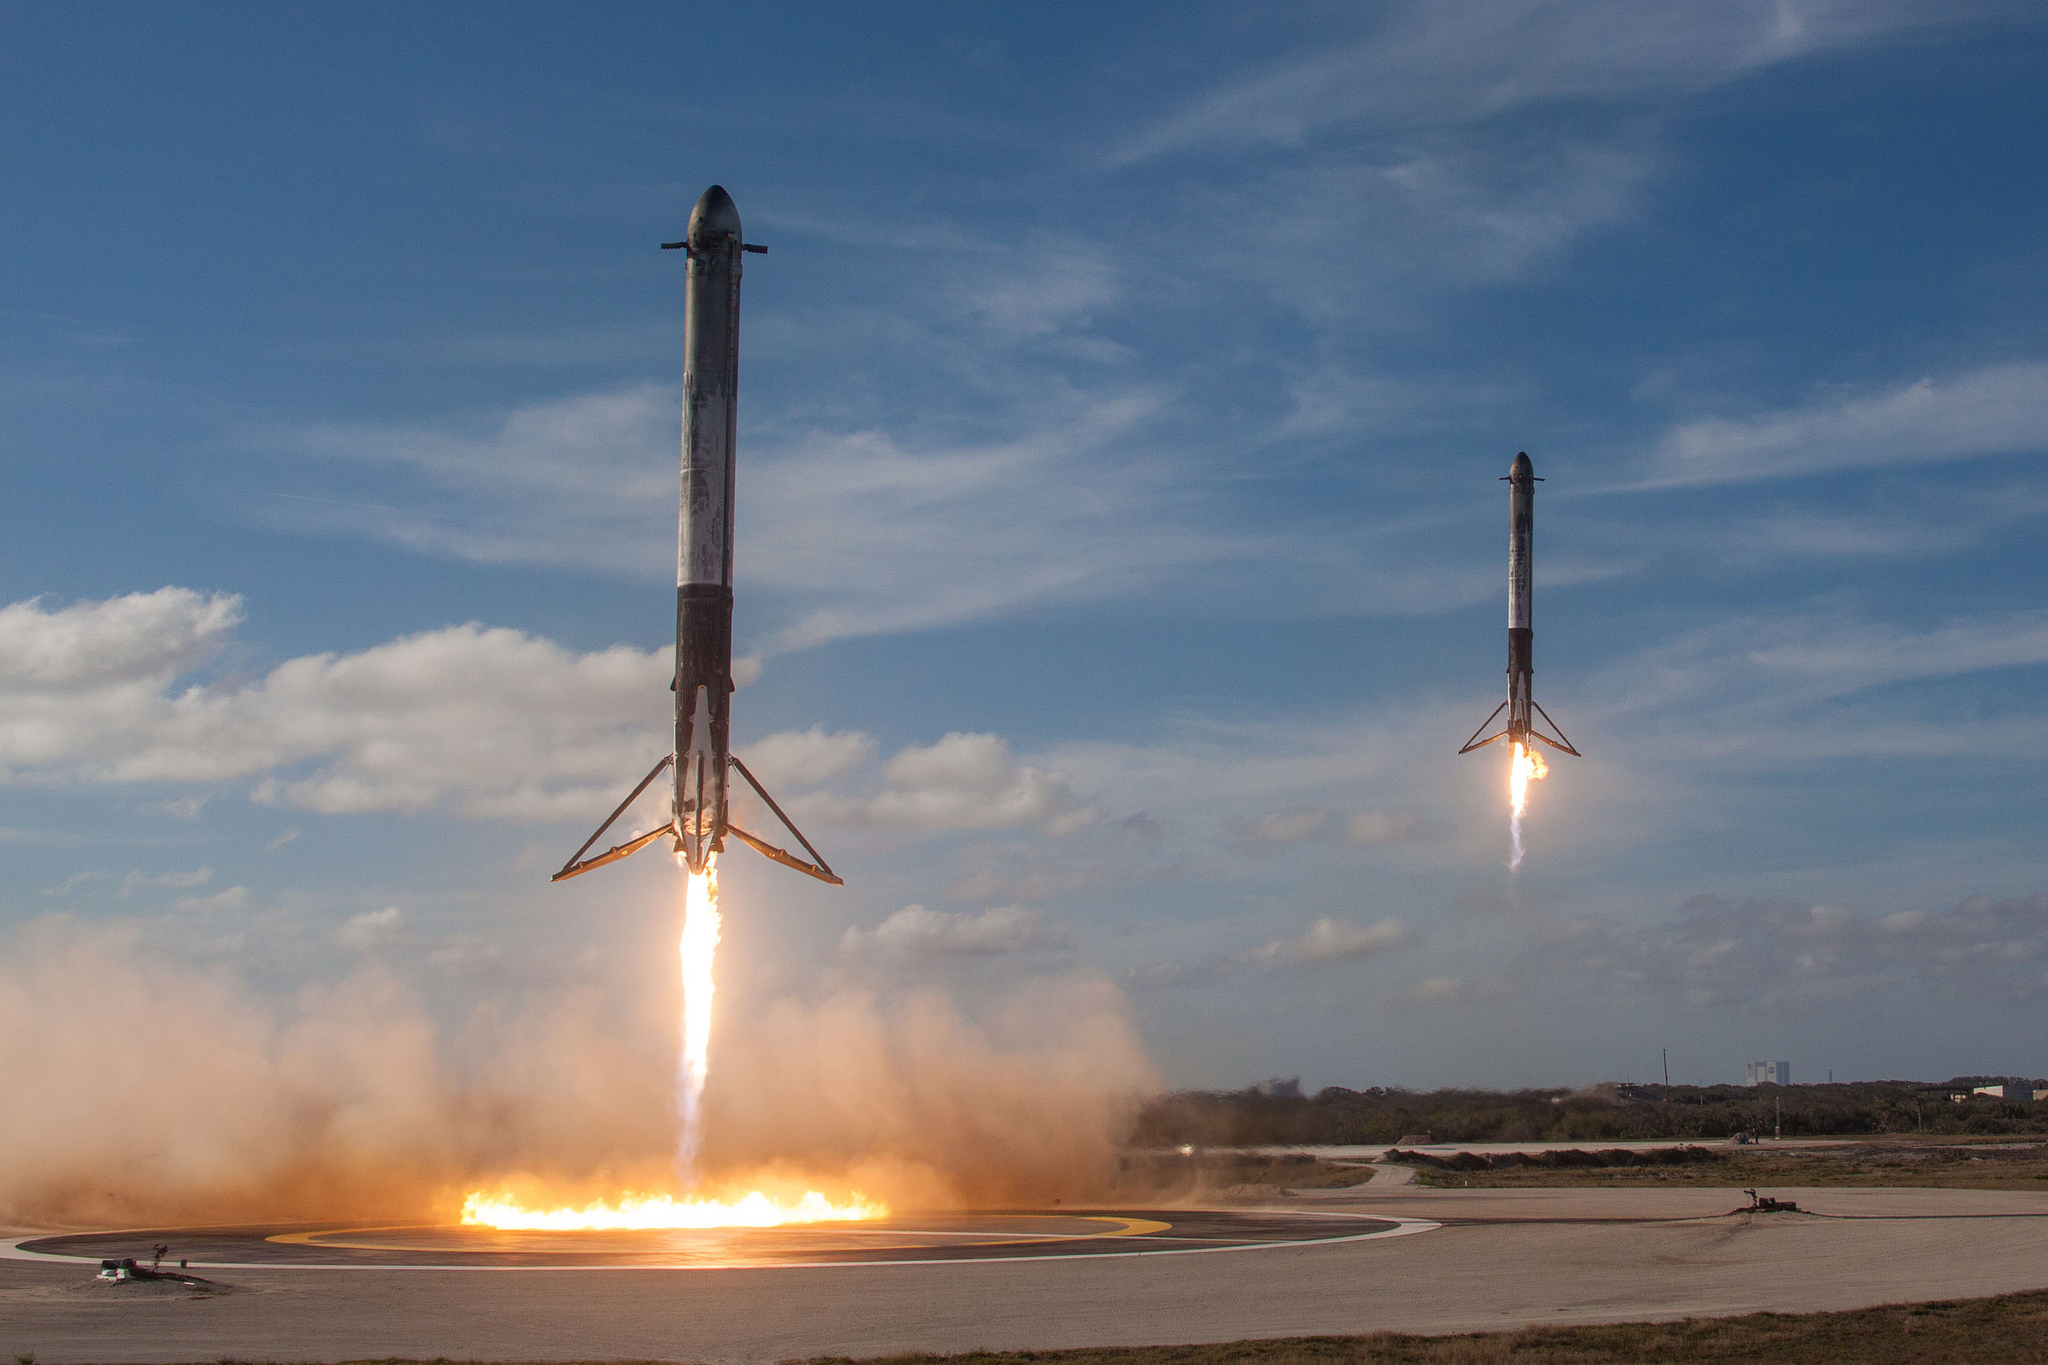 Dünyanın en güçlü roketi Falcon Heavy, tekrar uçmaya hazırlanıyor